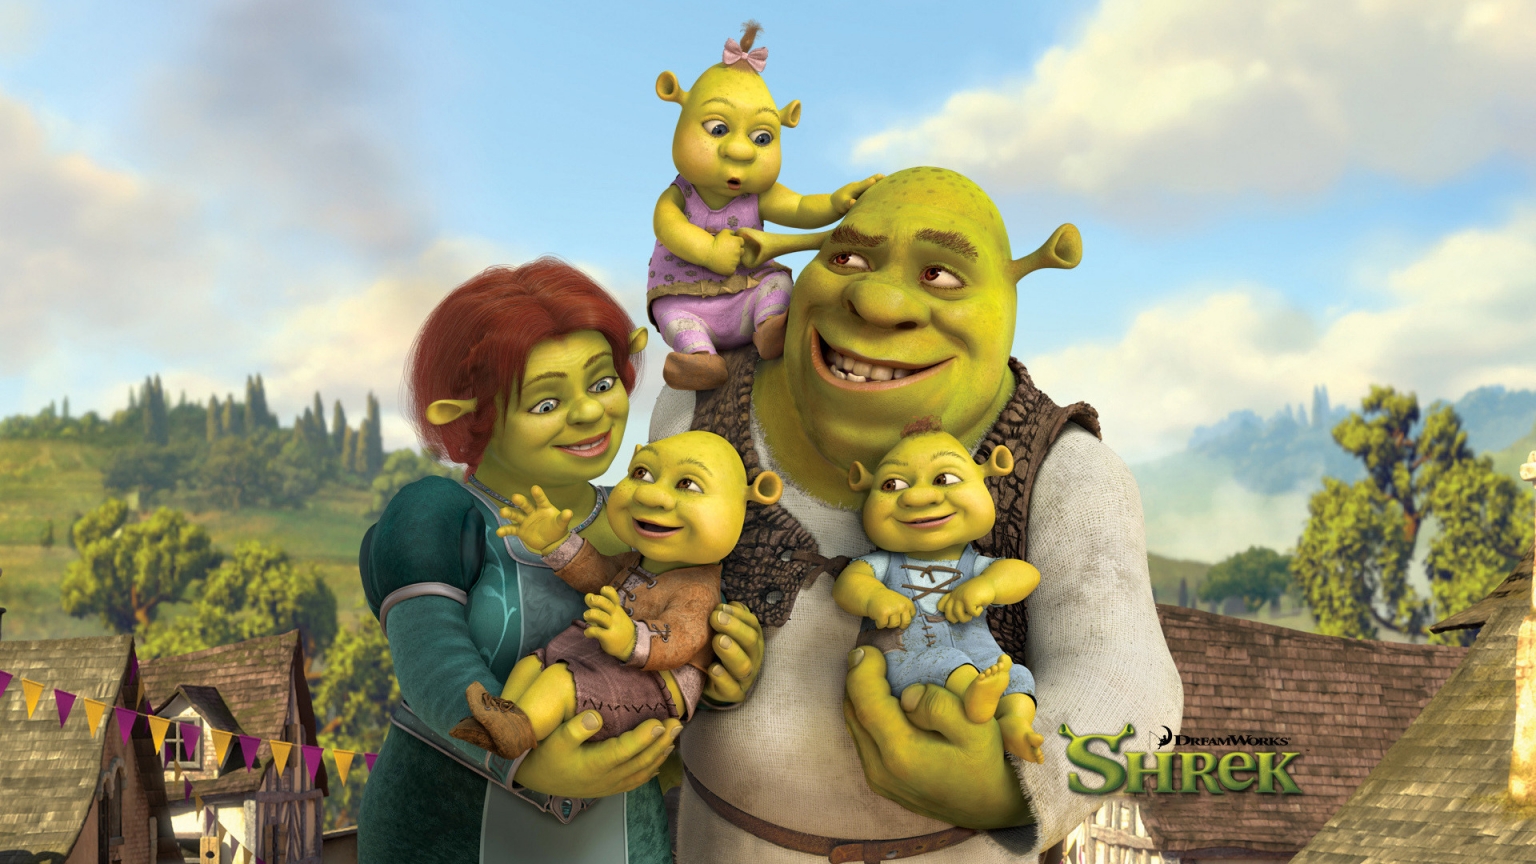 Shreks Family for 1536 x 864 HDTV resolution